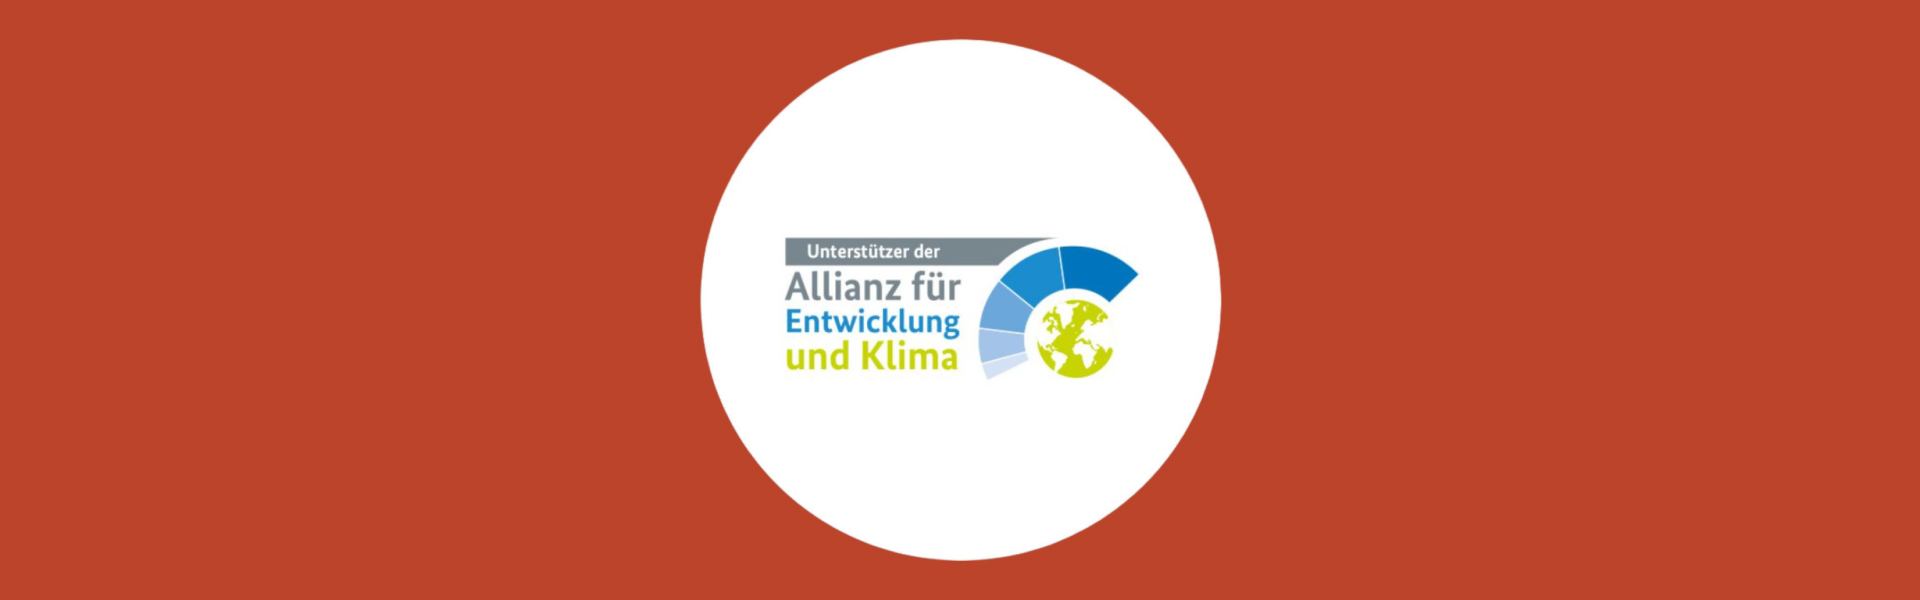 Beko Grundig Deutschland GmbH unterstützt Allianz für Entwicklung und Klima